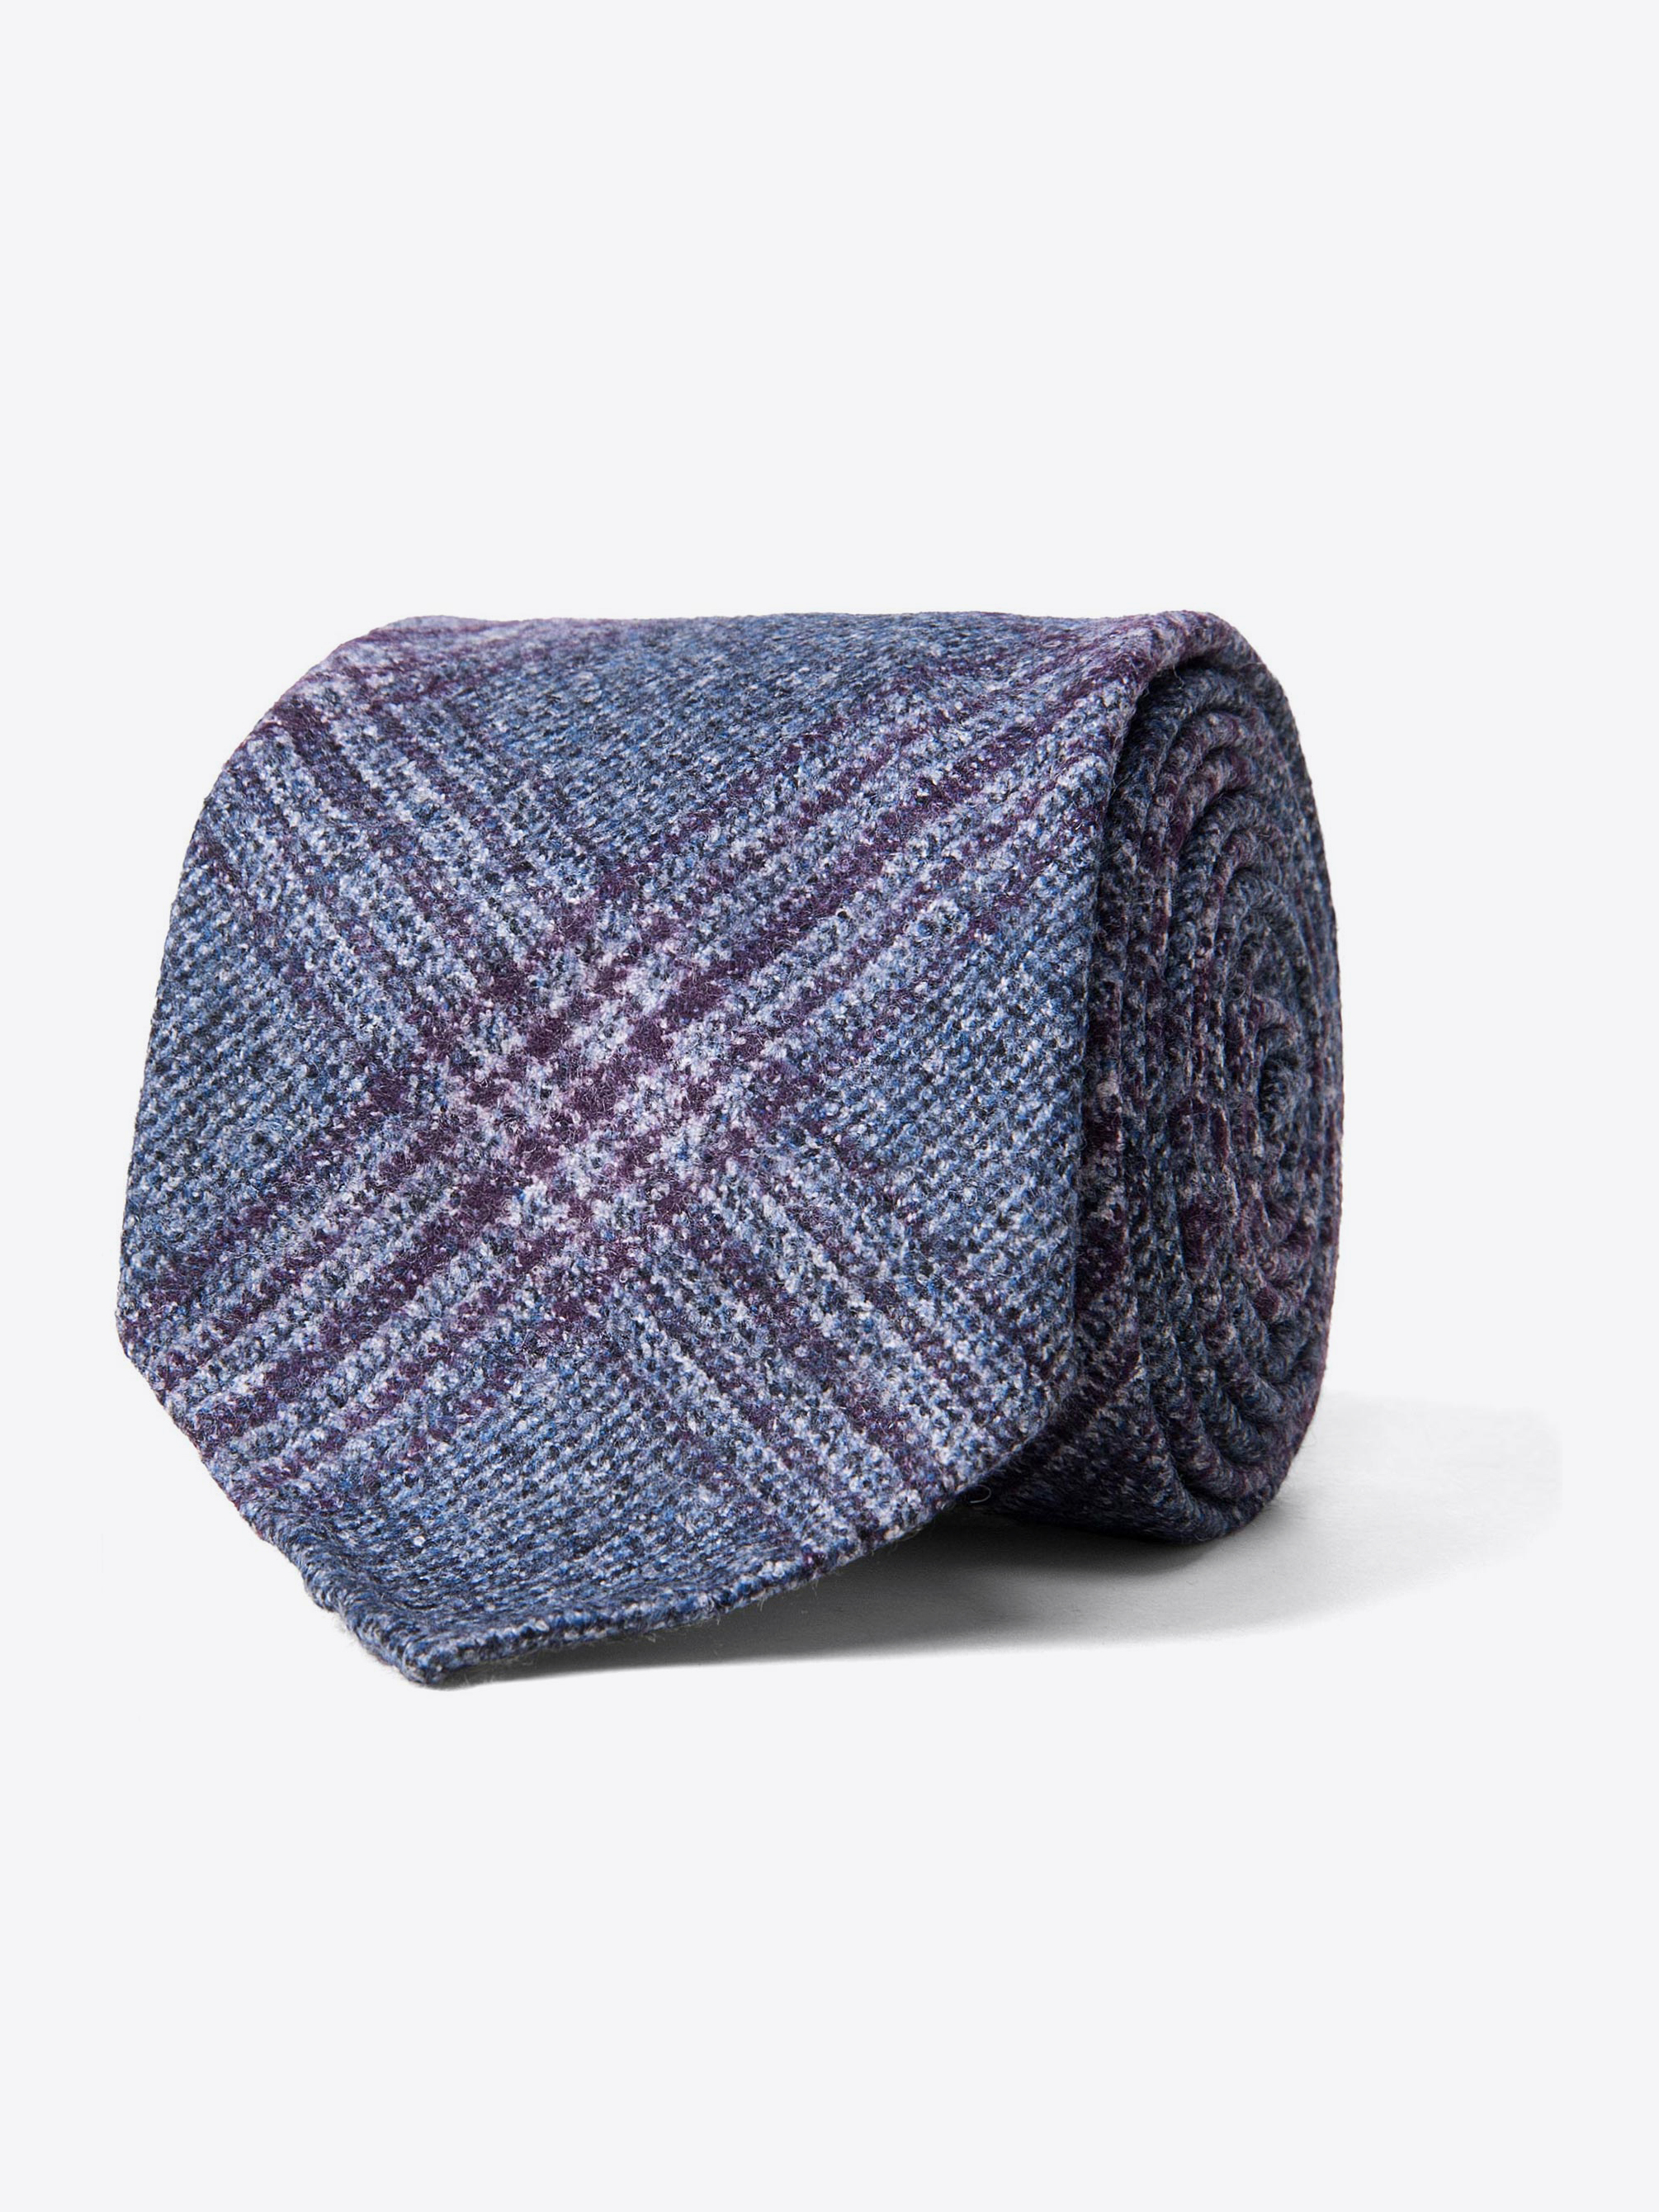 Zoom Image of Grey and Scarlet Wool Plaid Tie